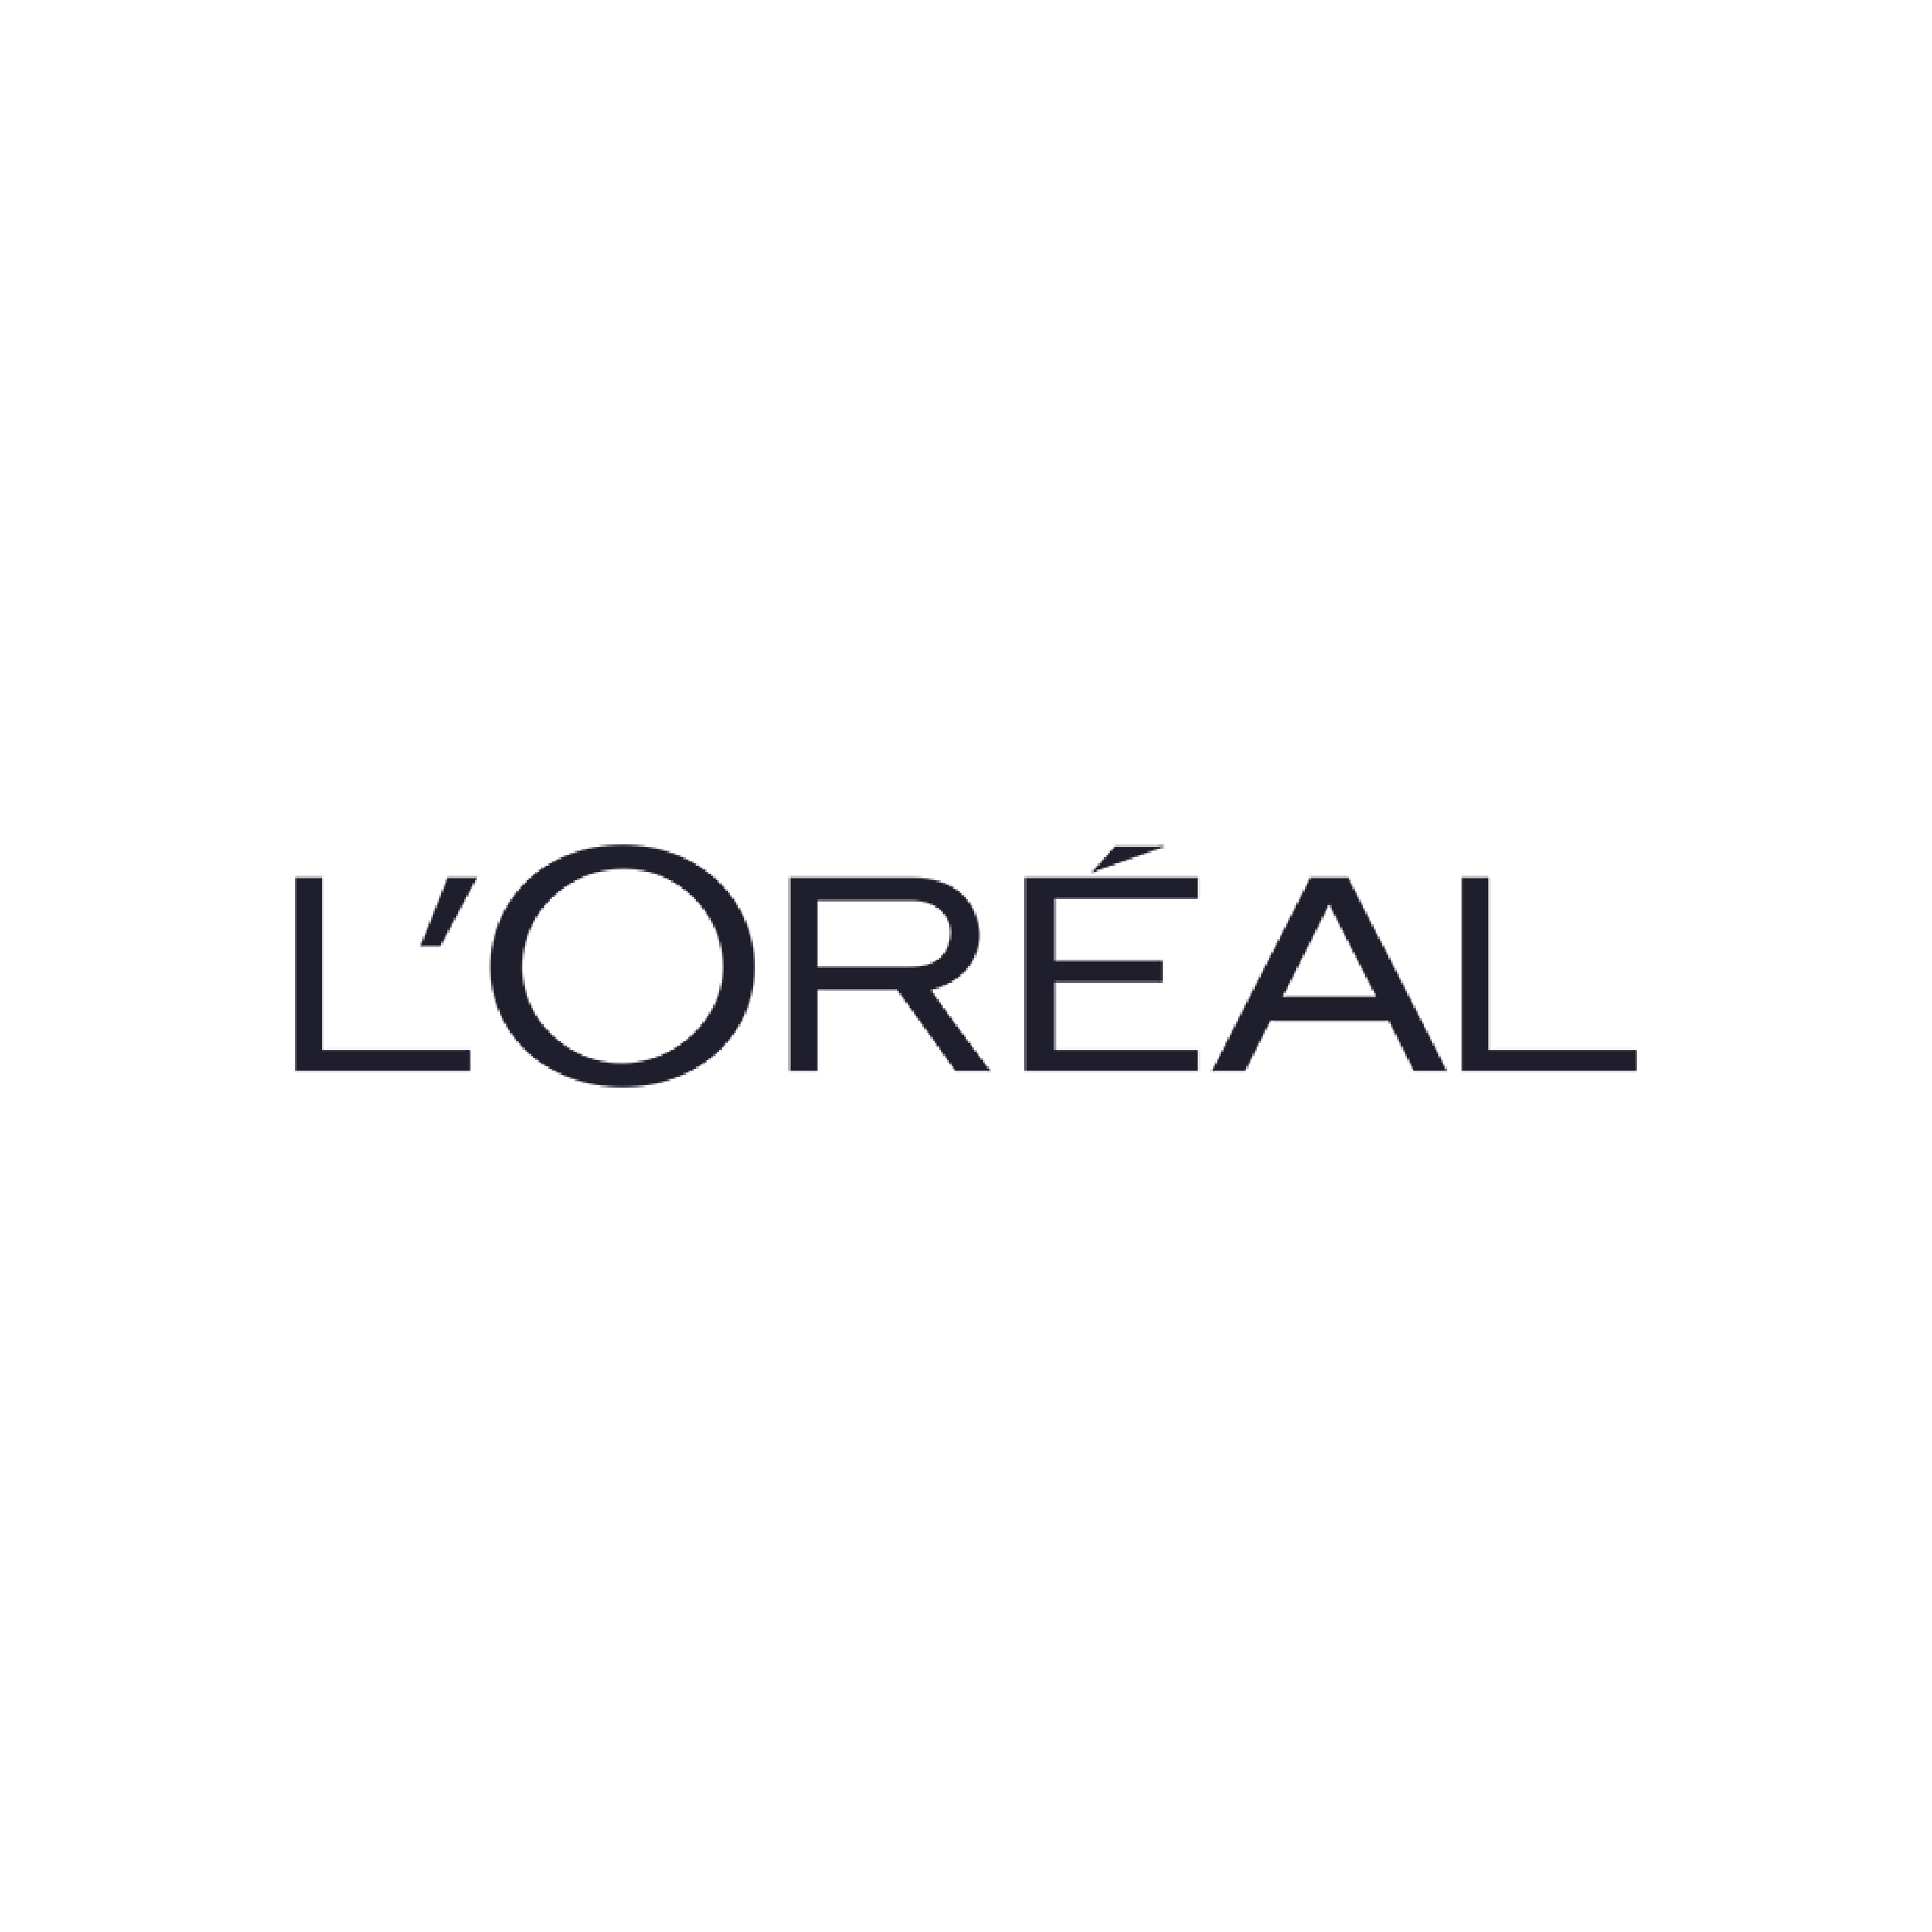 logo-loreal@2x.png